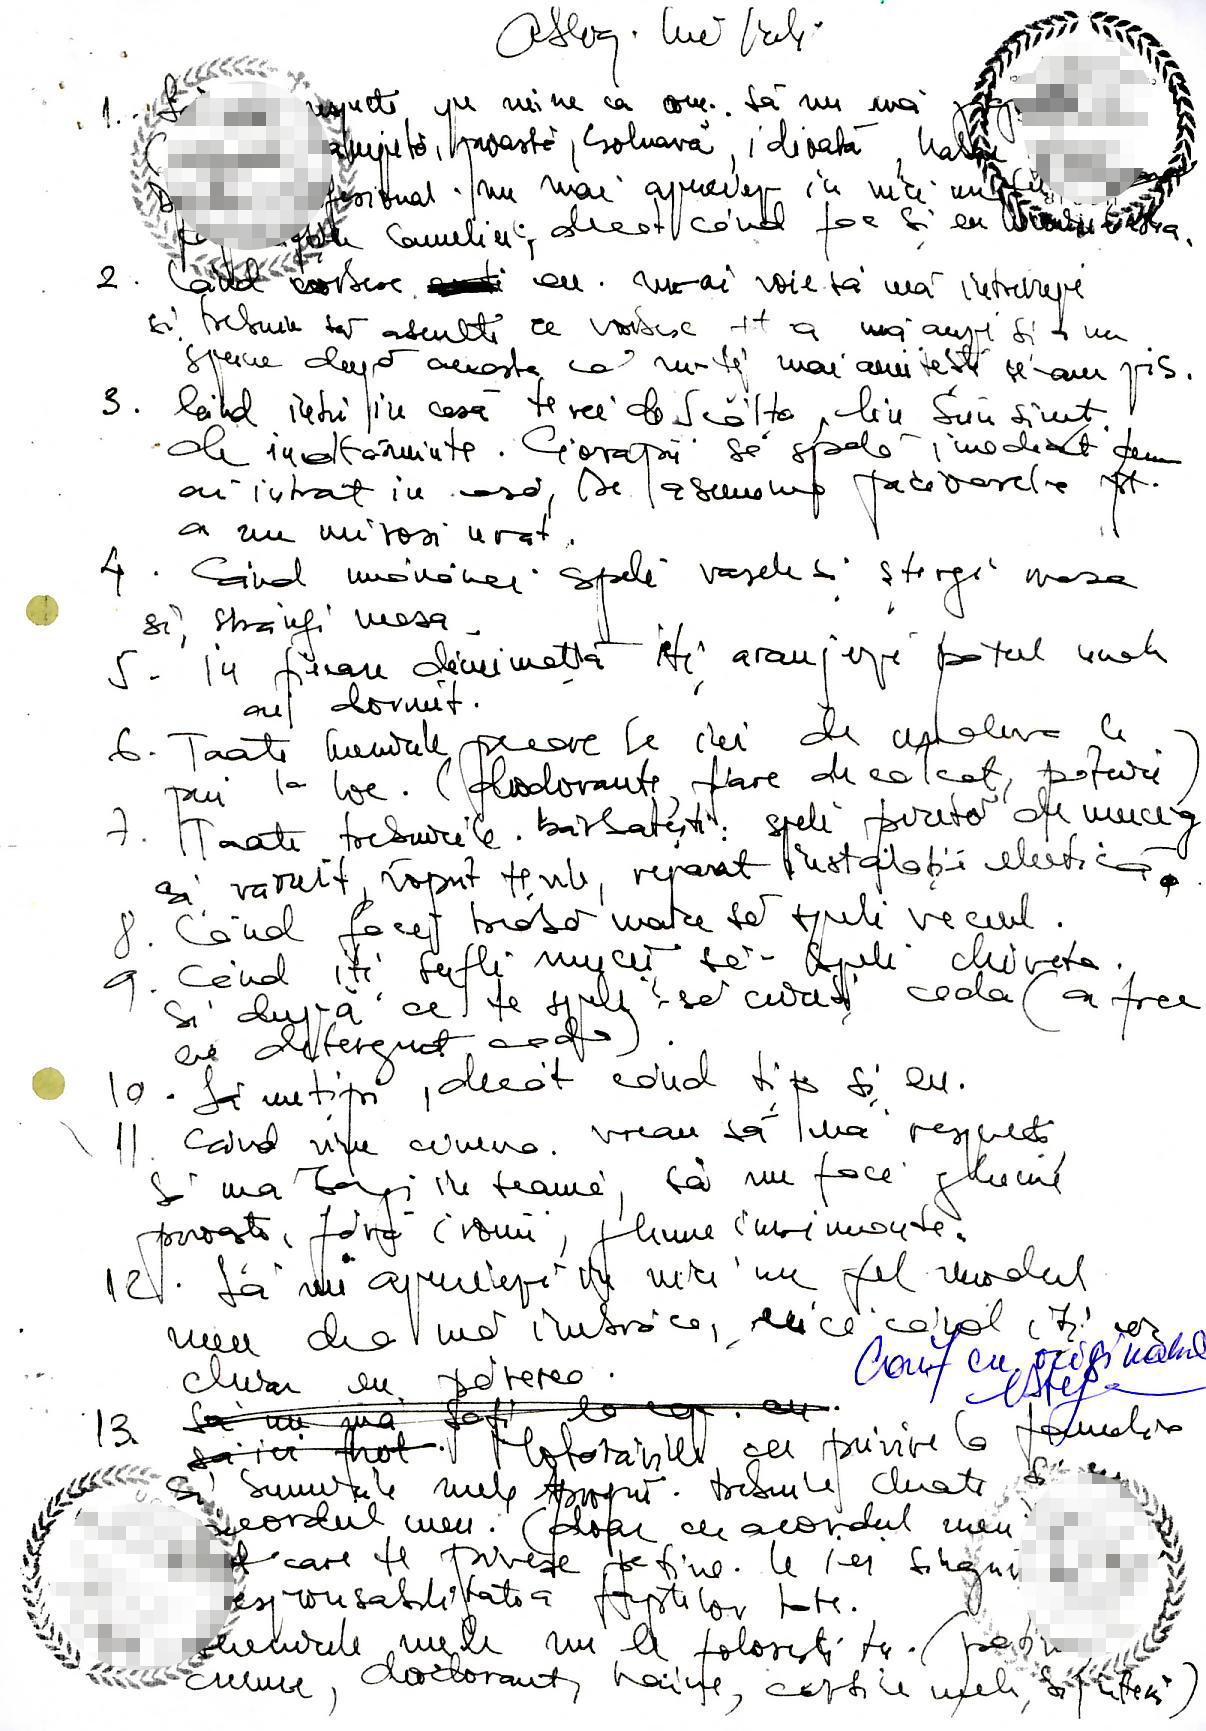 Lista cu obligatii, scrisa de mana si semnata de ambii soti, se intinde pe trei file